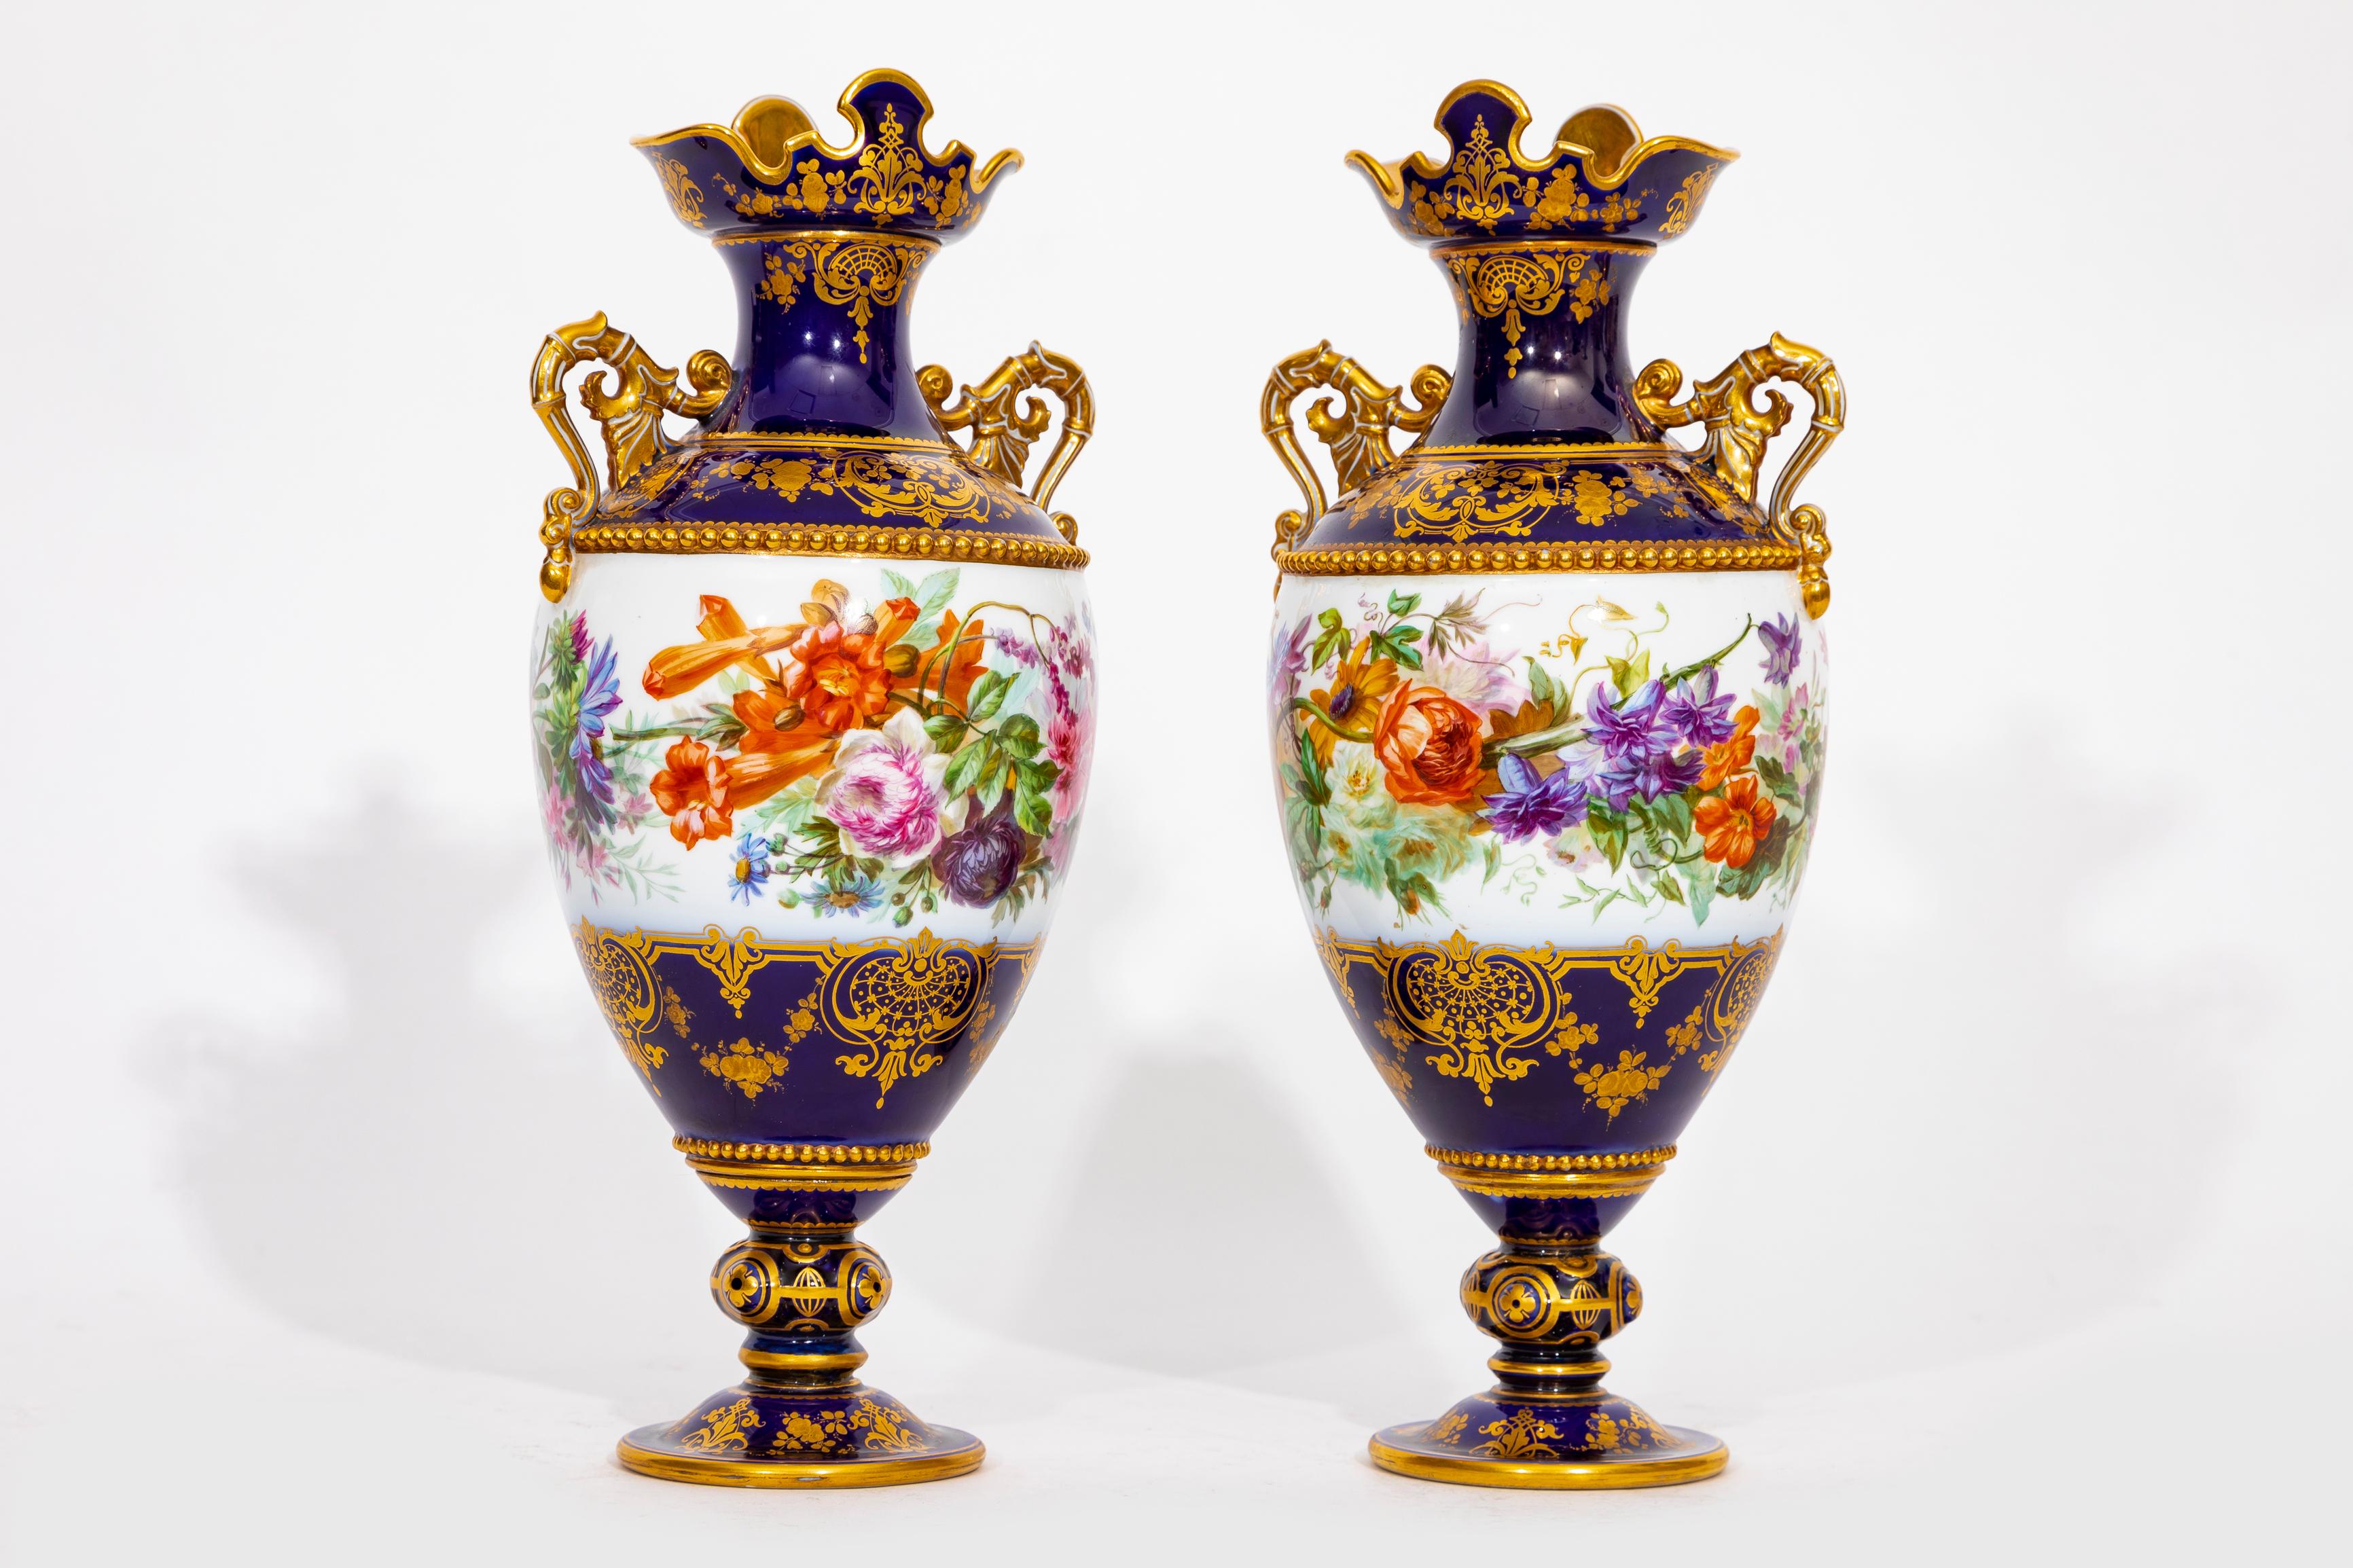 Unglaubliches und ziemlich seltenes Paar Vasen aus Sèvres-Porzellan mit kobaltblauem Grund Adélaïde, 2eme Grandeur; 1843-1849, grün gedruckte S.49 grün gedruckte Raute für 1849 auf der Unterseite jedes Sockels, eisenrot gedruckte R.F. 49 république